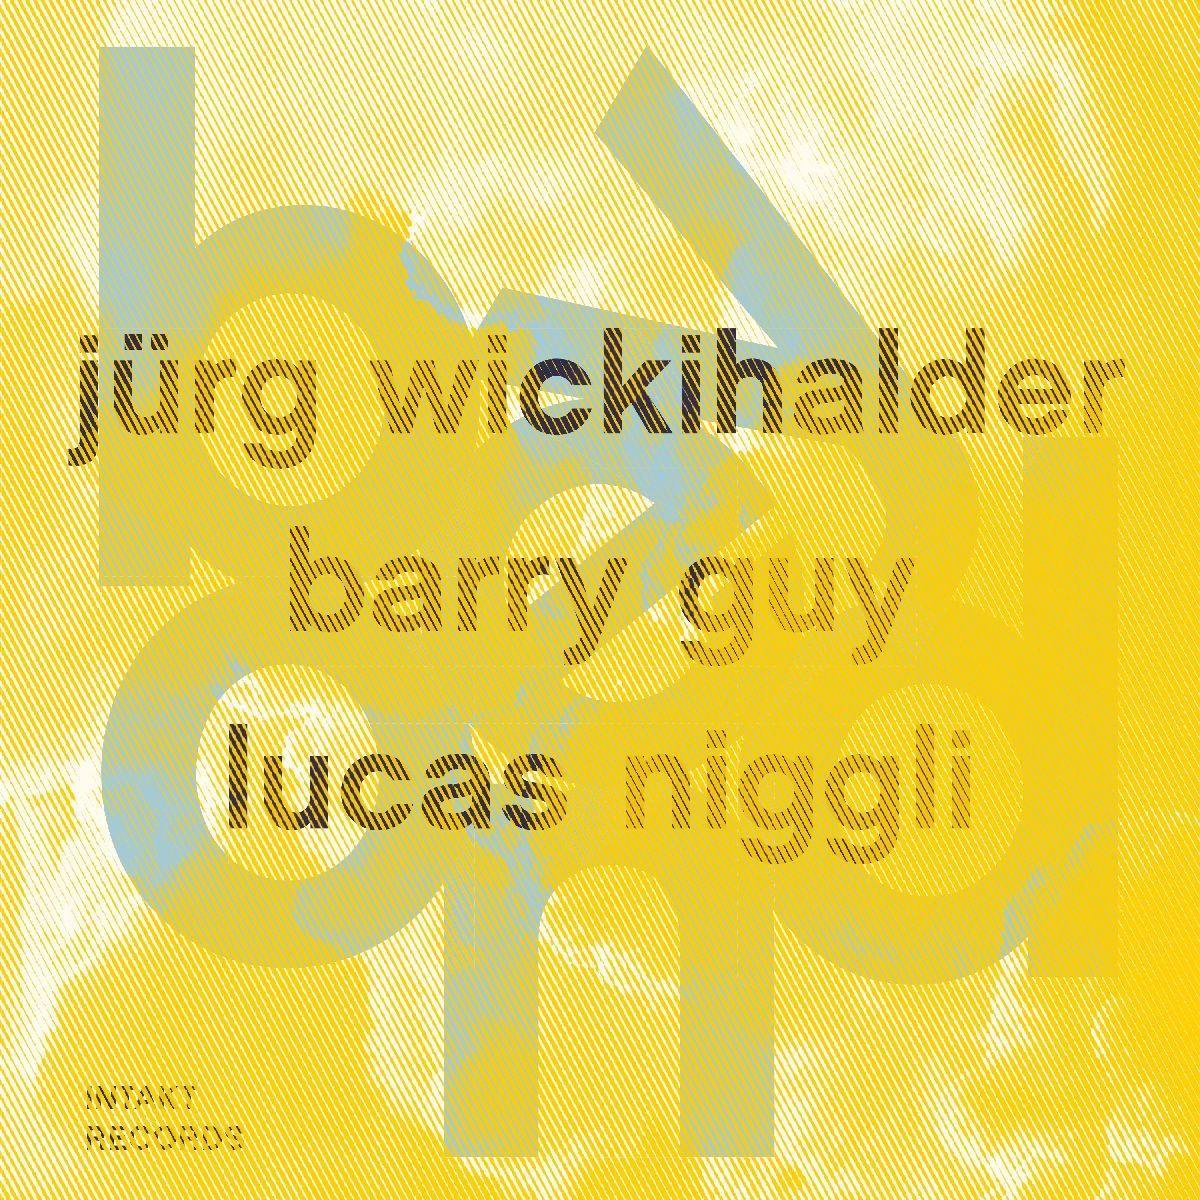 Wickihalder Trio: Beyond